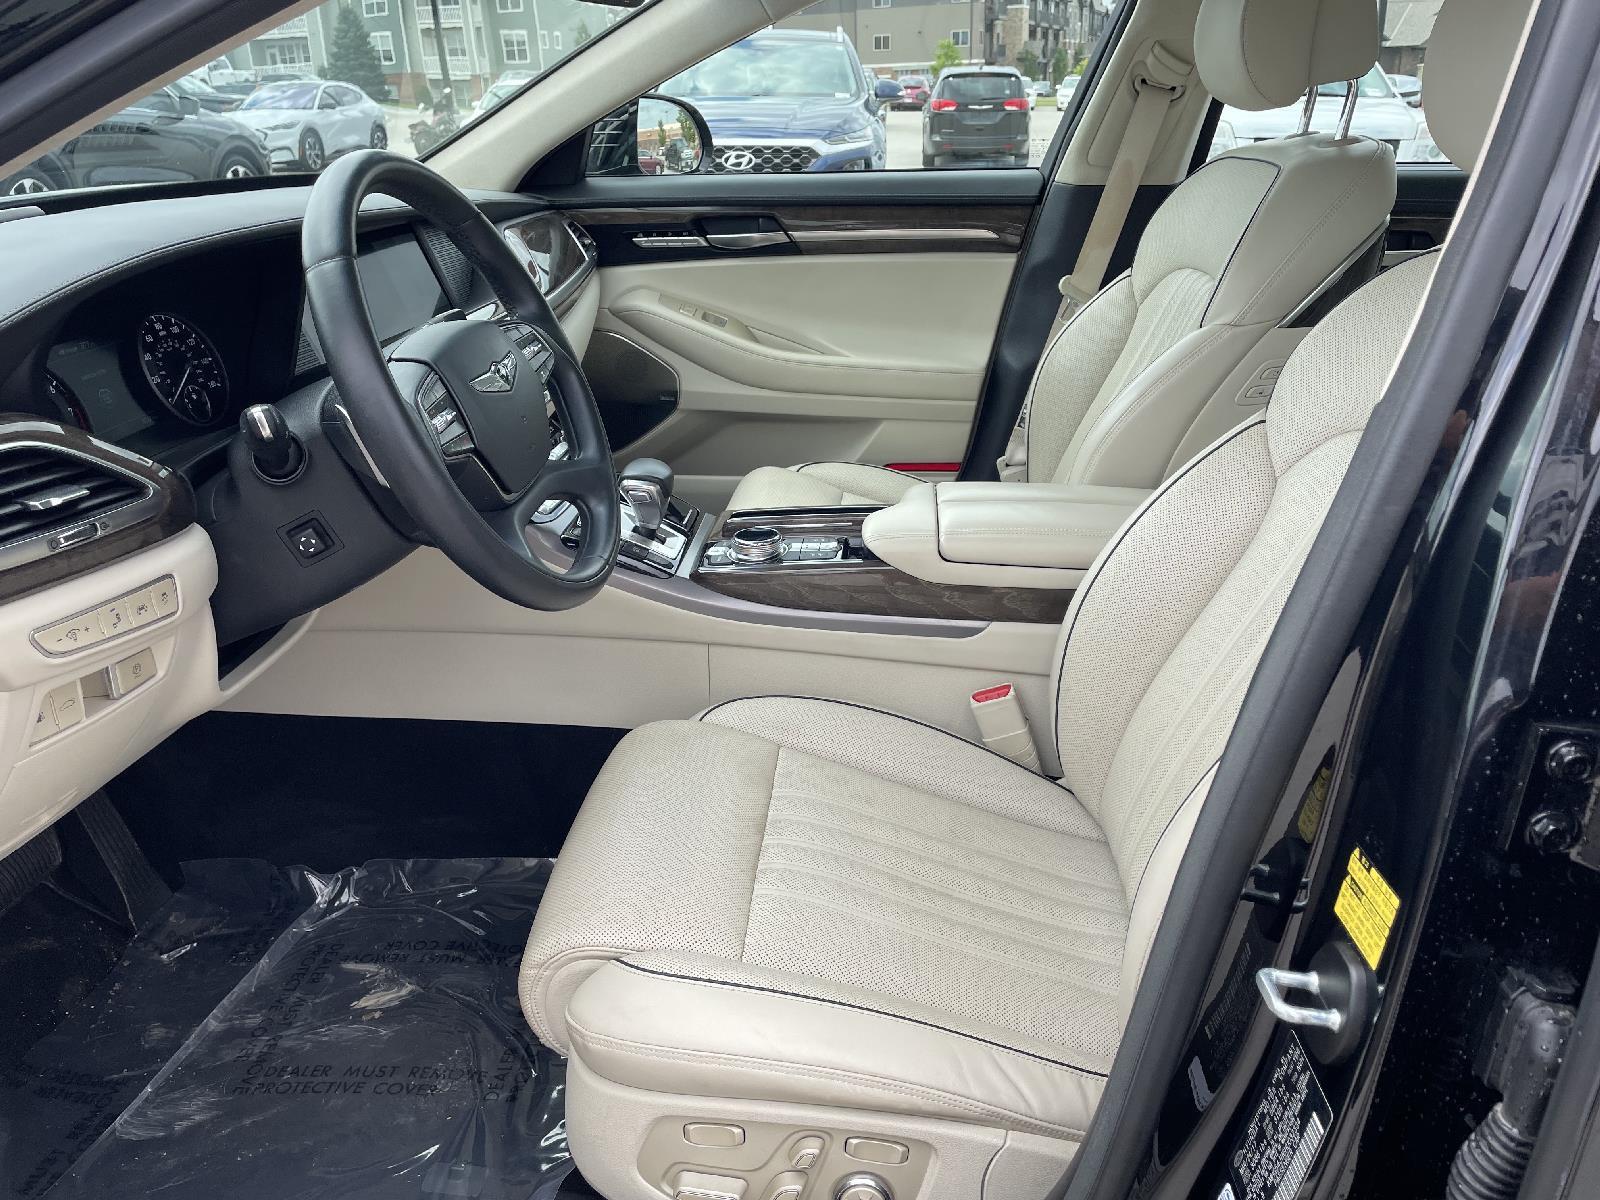 Used 2017 Genesis G90 5.0L Ultimate Sedan for sale in Lincoln NE